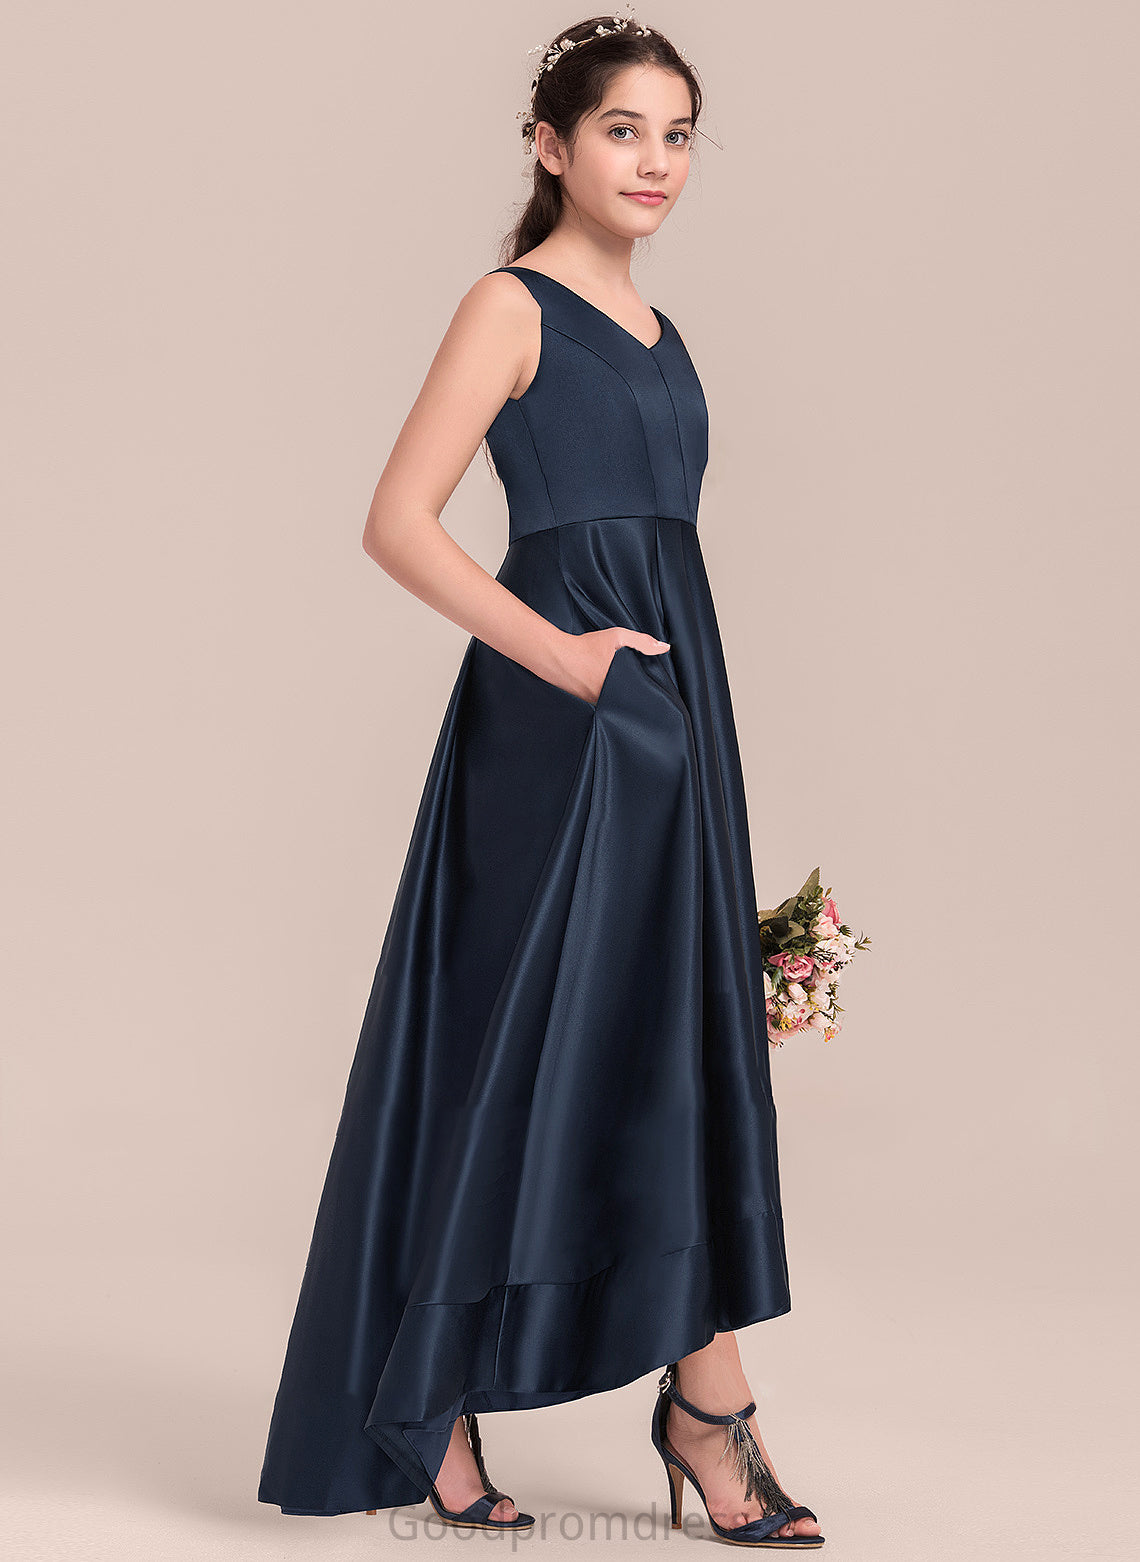 Satin A-Line Asymmetrical June V-neck Junior Bridesmaid Dresses